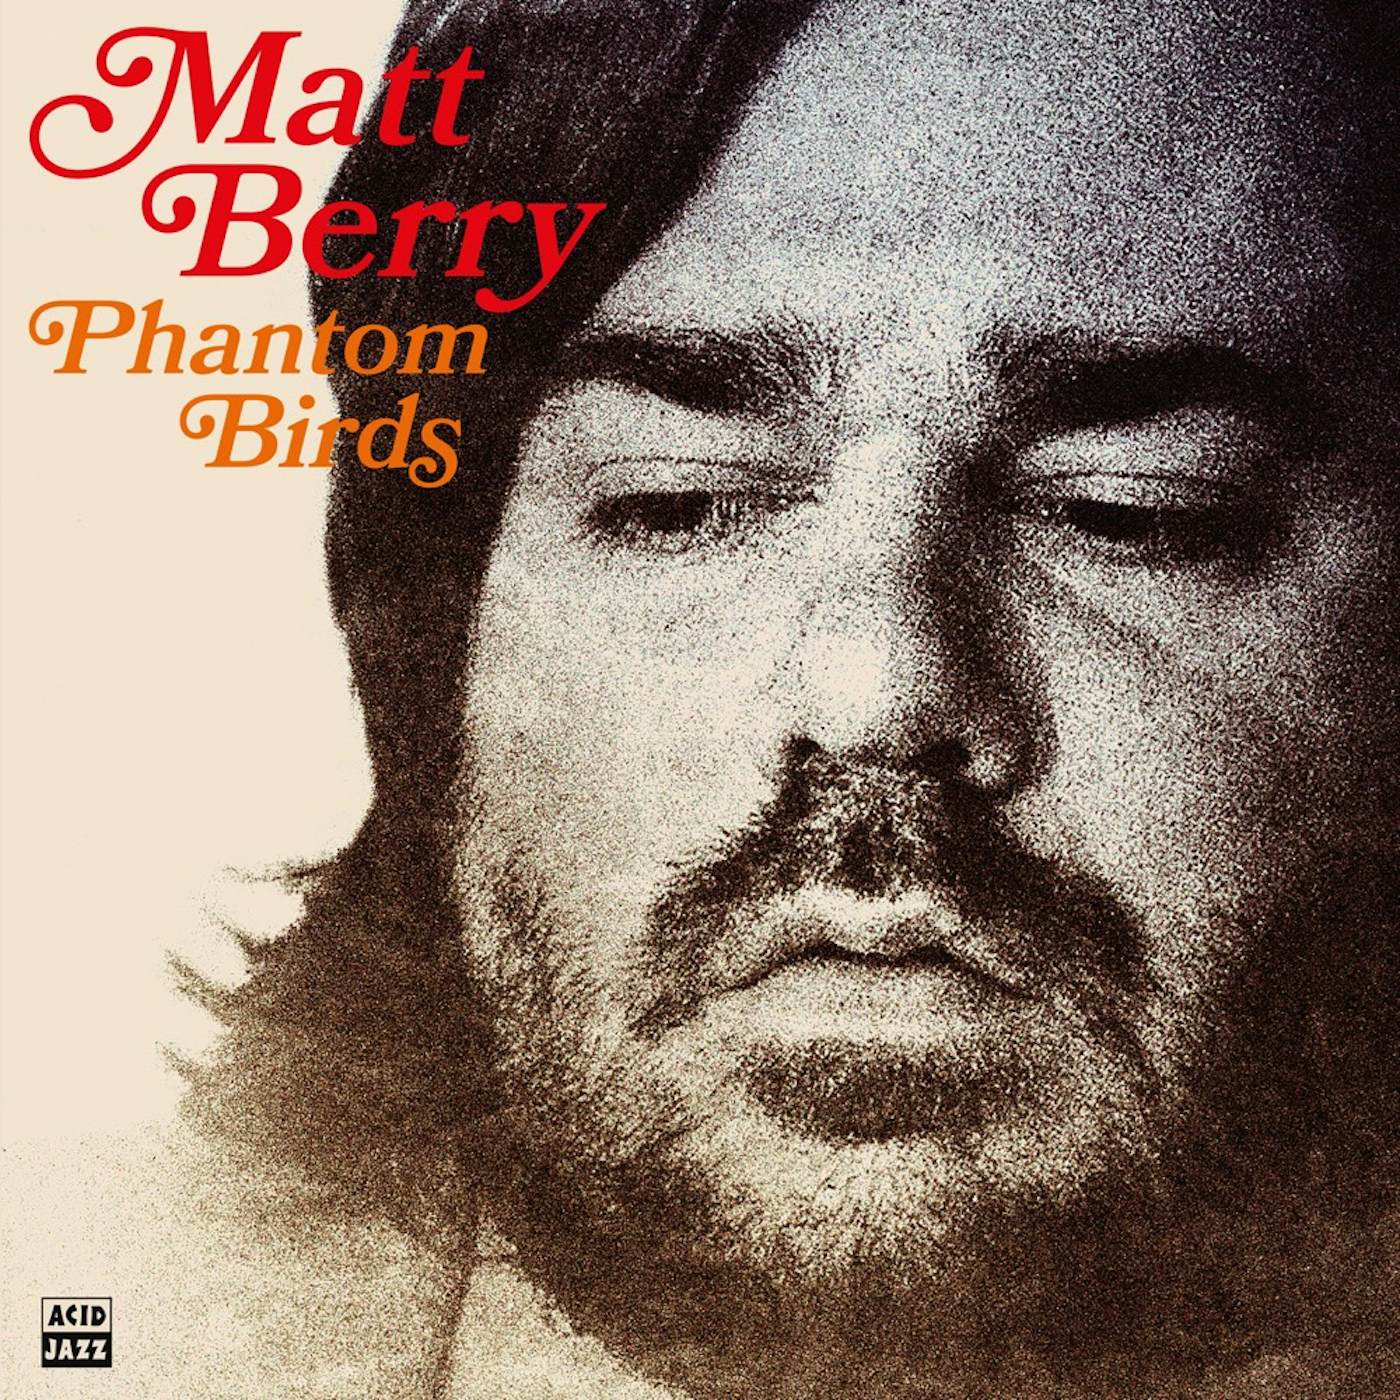 Matt Berry Phantom Birds (Red Vinyl) Vinyl Record